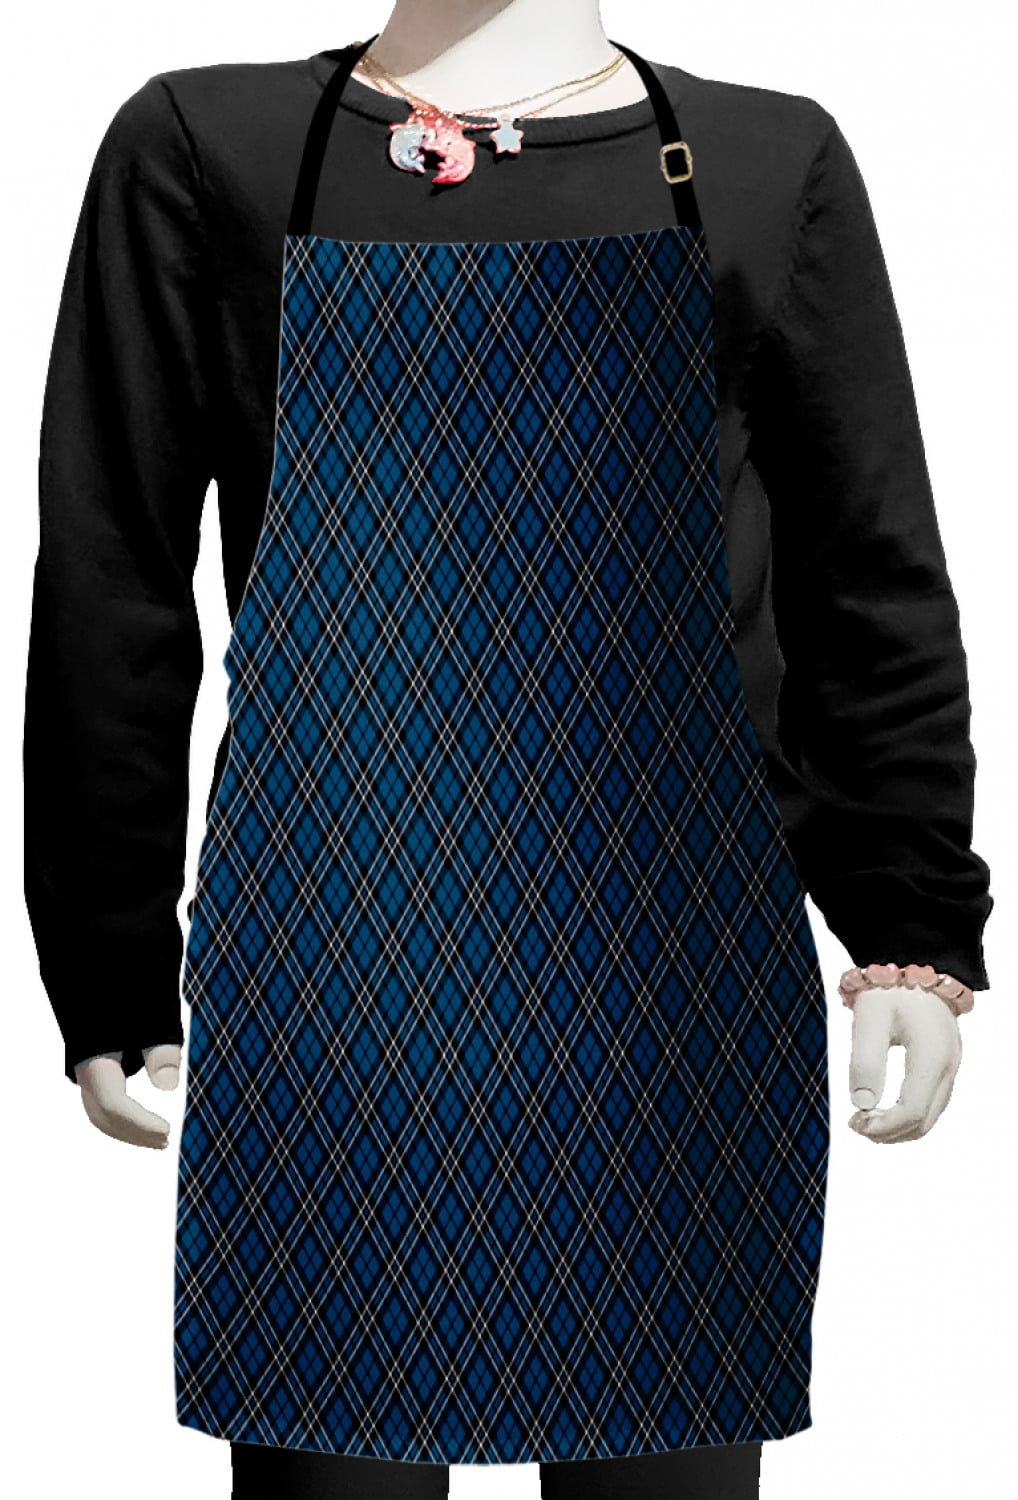 blue & grey,denim 26 x 11 w/apron ties 26" long Details about   1 pc 4 pocket half waist apron 